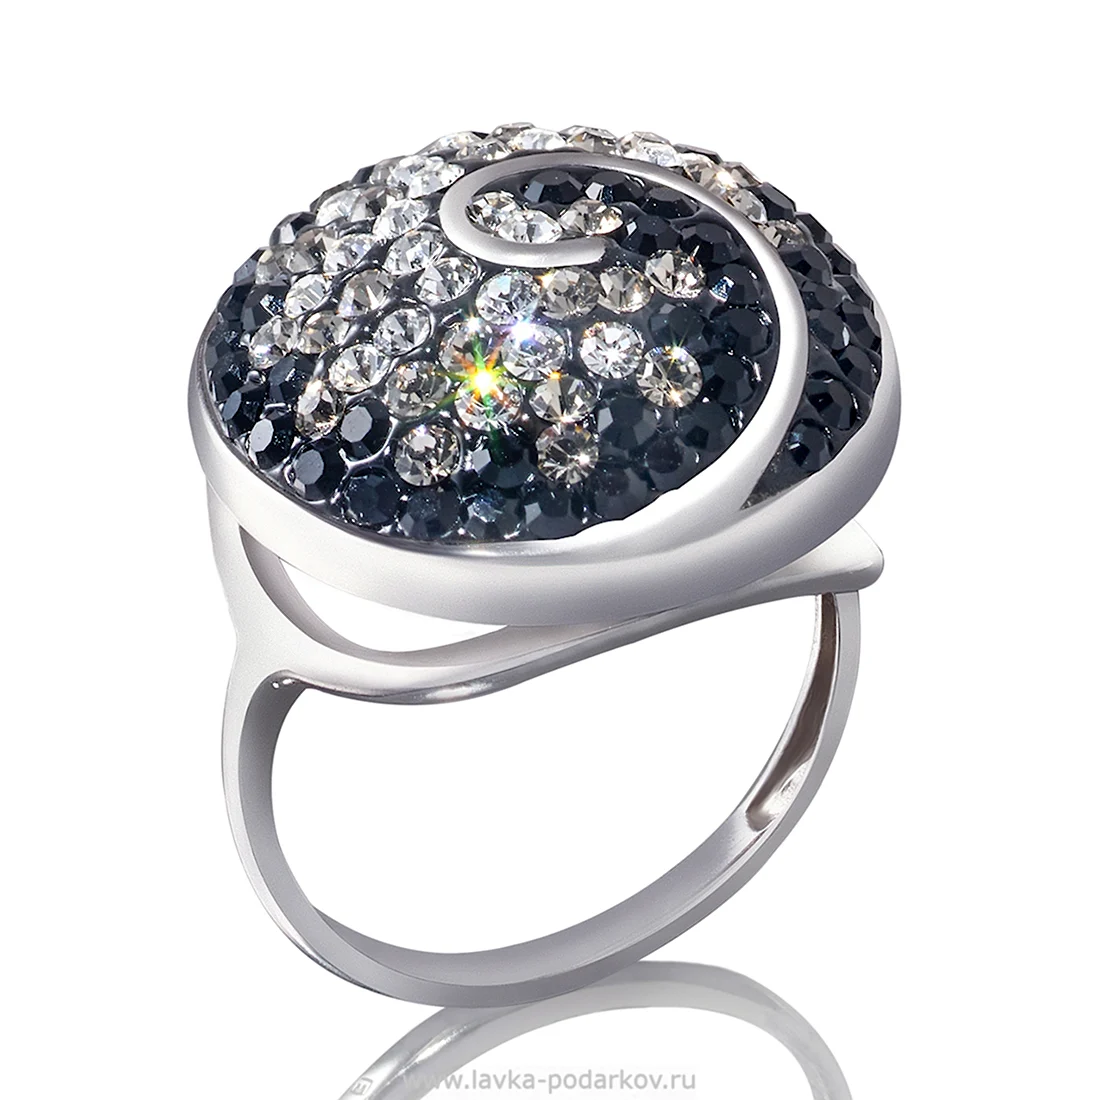 Кольцо серебро с кристаллом Сваровски